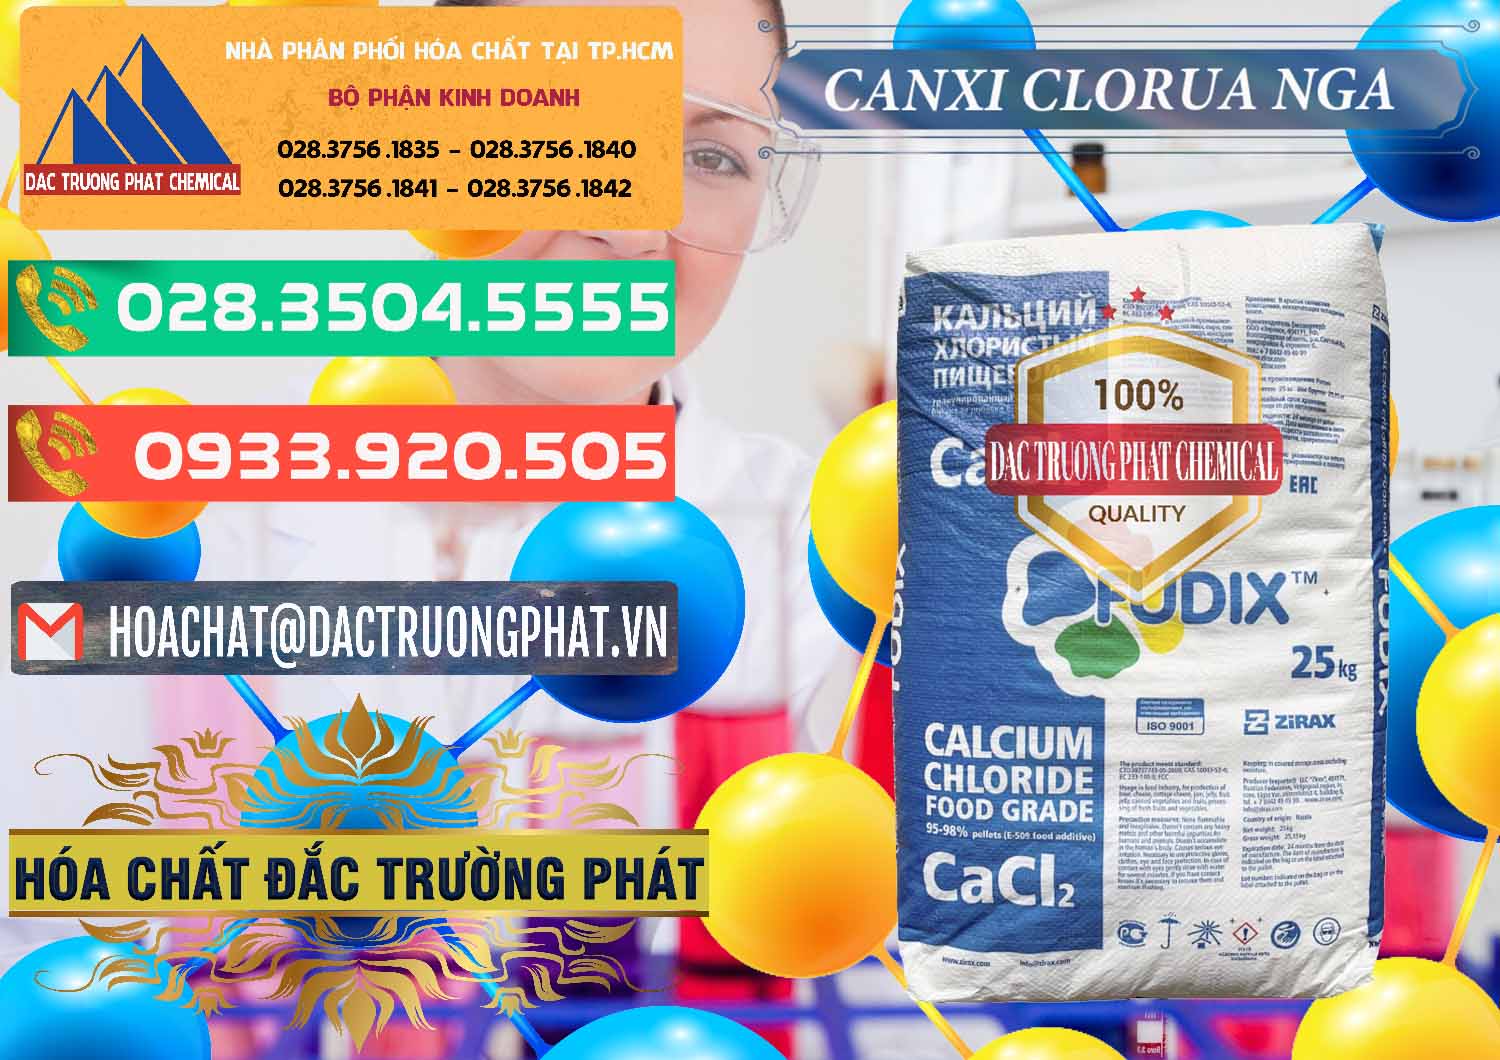 Nơi nhập khẩu và bán CaCl2 – Canxi Clorua Nga Russia - 0430 - Nơi chuyên phân phối - cung ứng hóa chất tại TP.HCM - congtyhoachat.com.vn